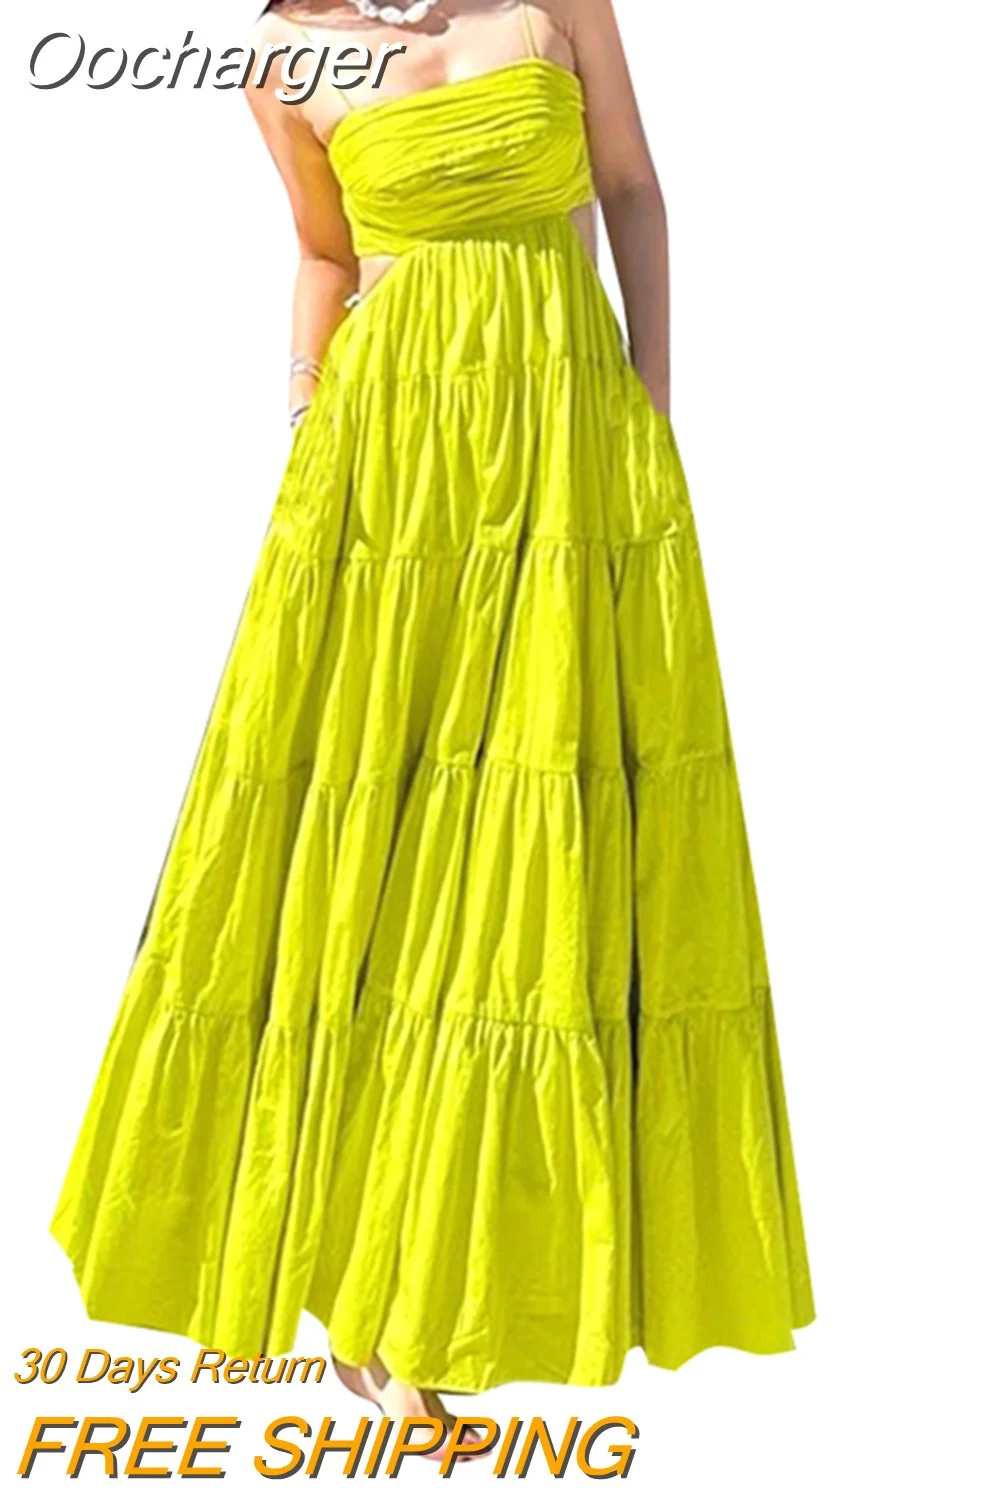 Oocharger Solid Summer Backless Dresses For Women Slash Neck Sleeveless High Waist Spliced Draped A Line Slip Dress Female